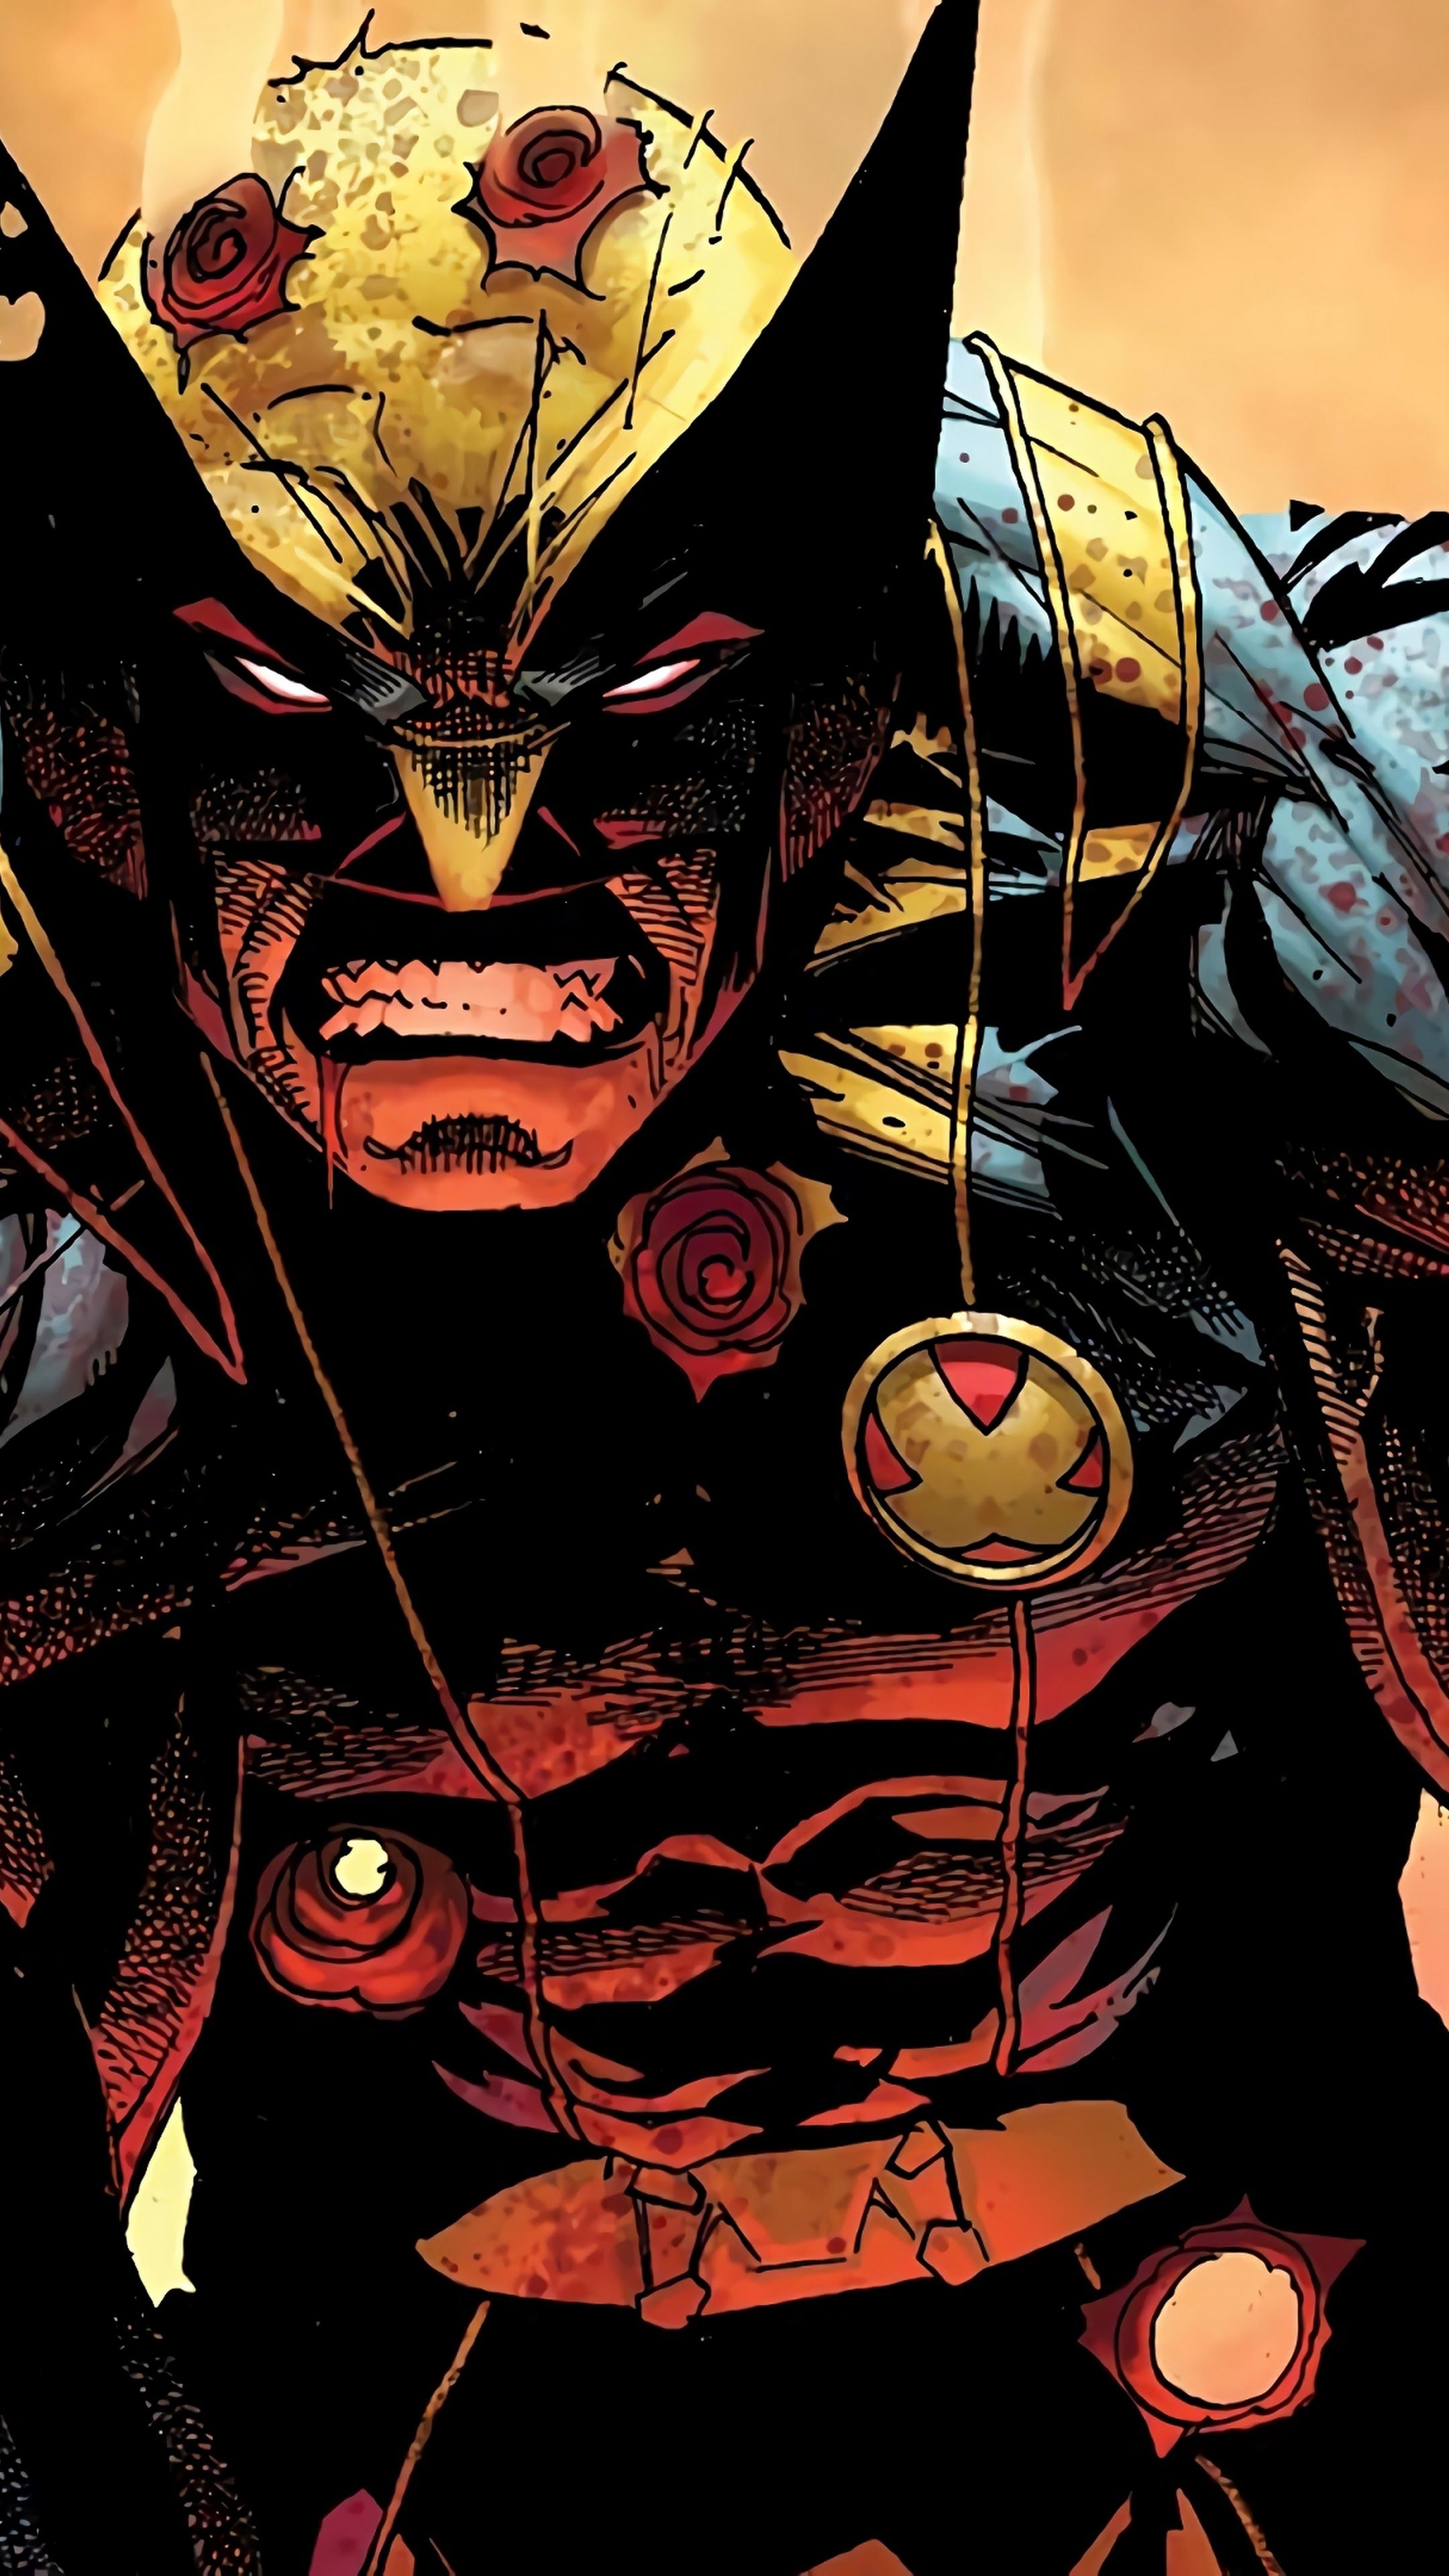 Wolverine Bullet Wounds Healing 4K Wallpaper